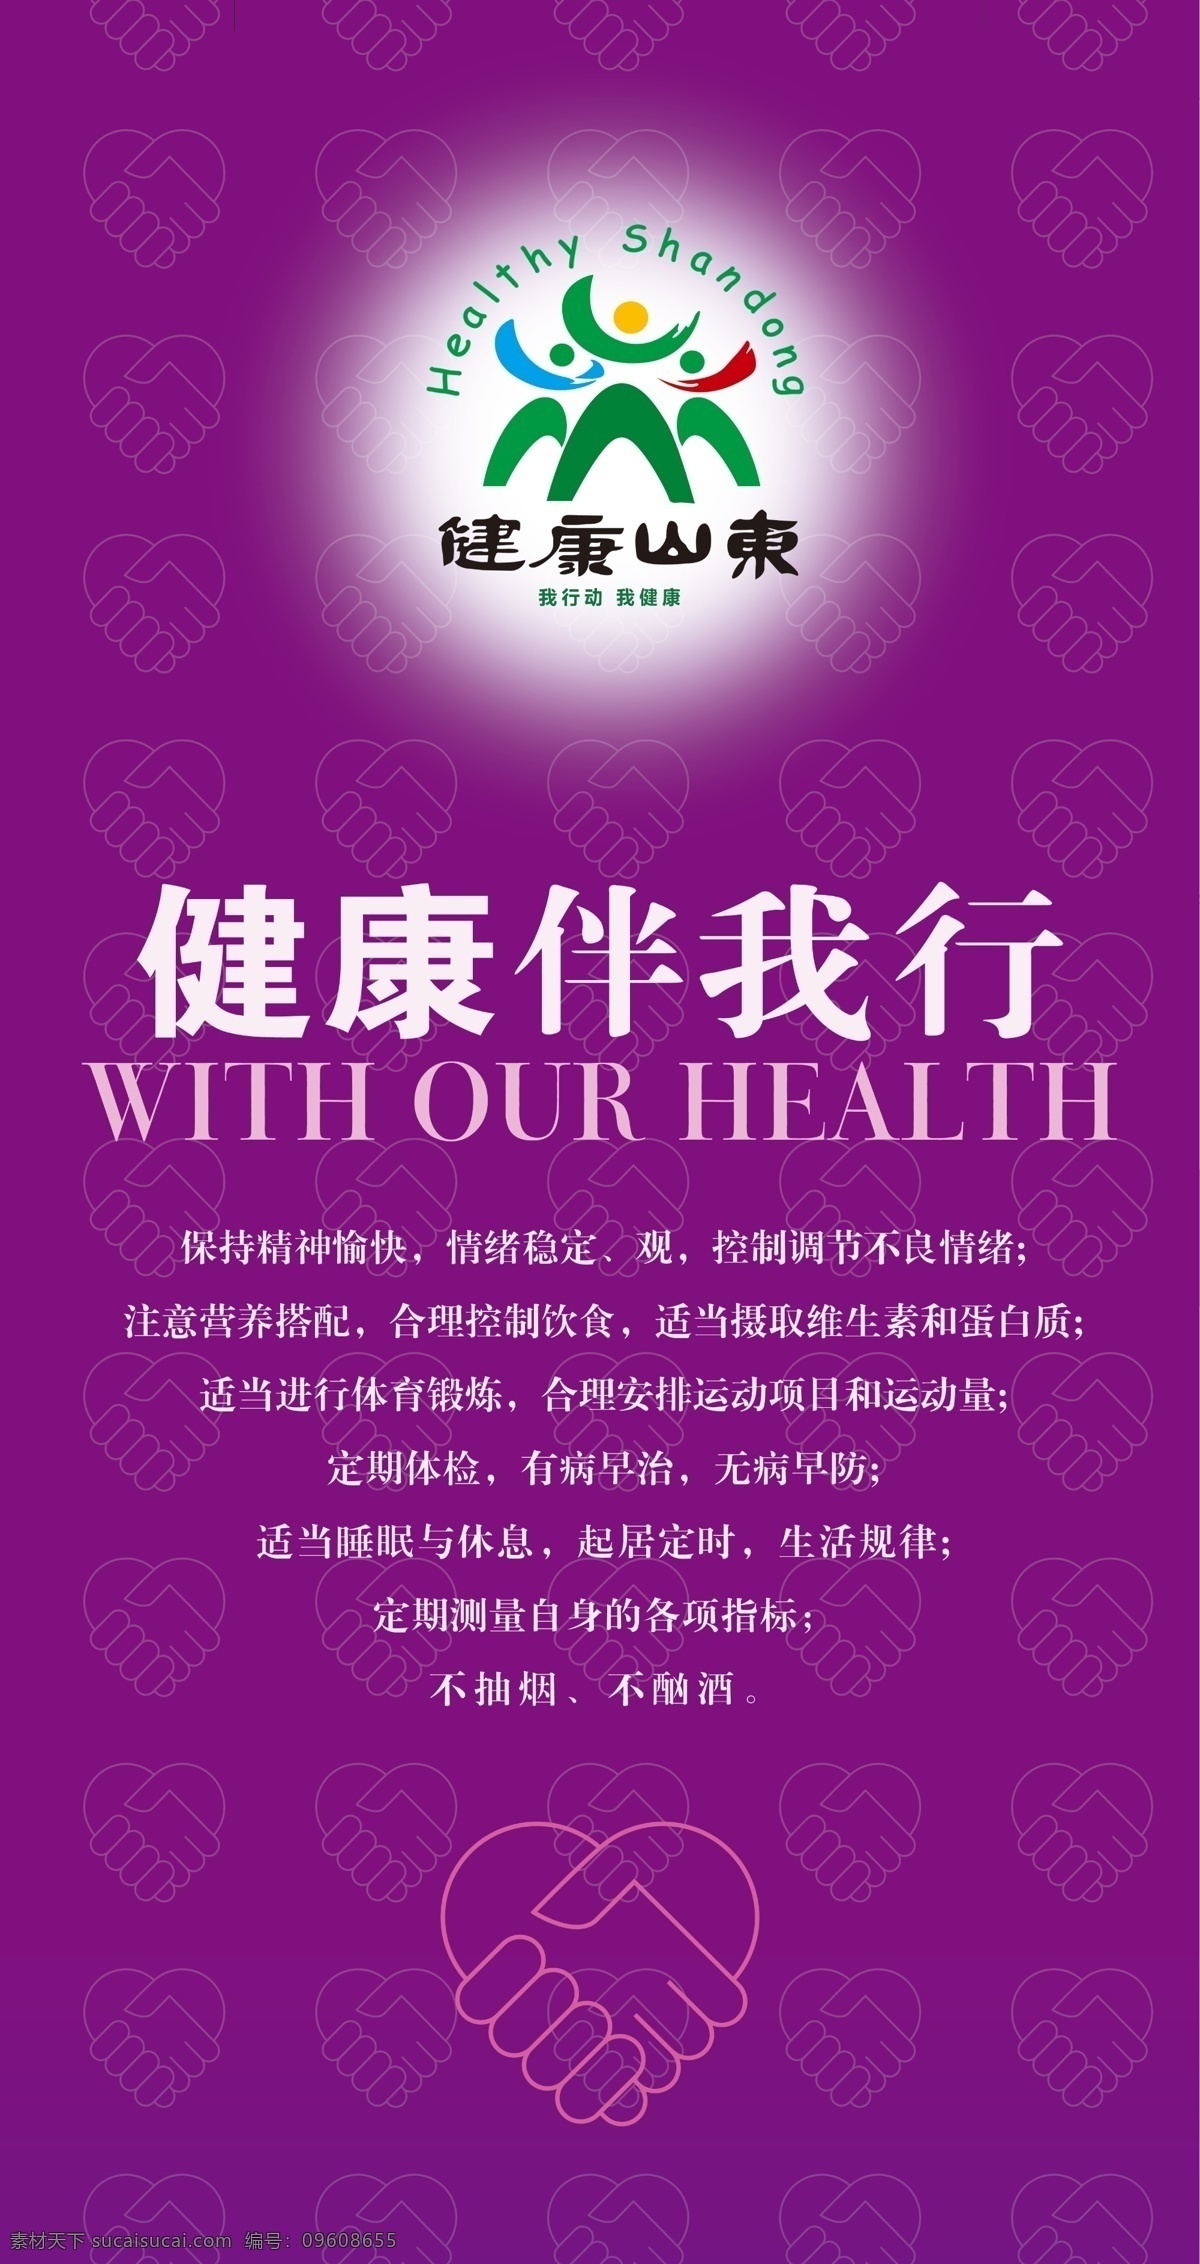 健康山东 健康山东标识 健康伴我行 海报 紫色 小图 分层